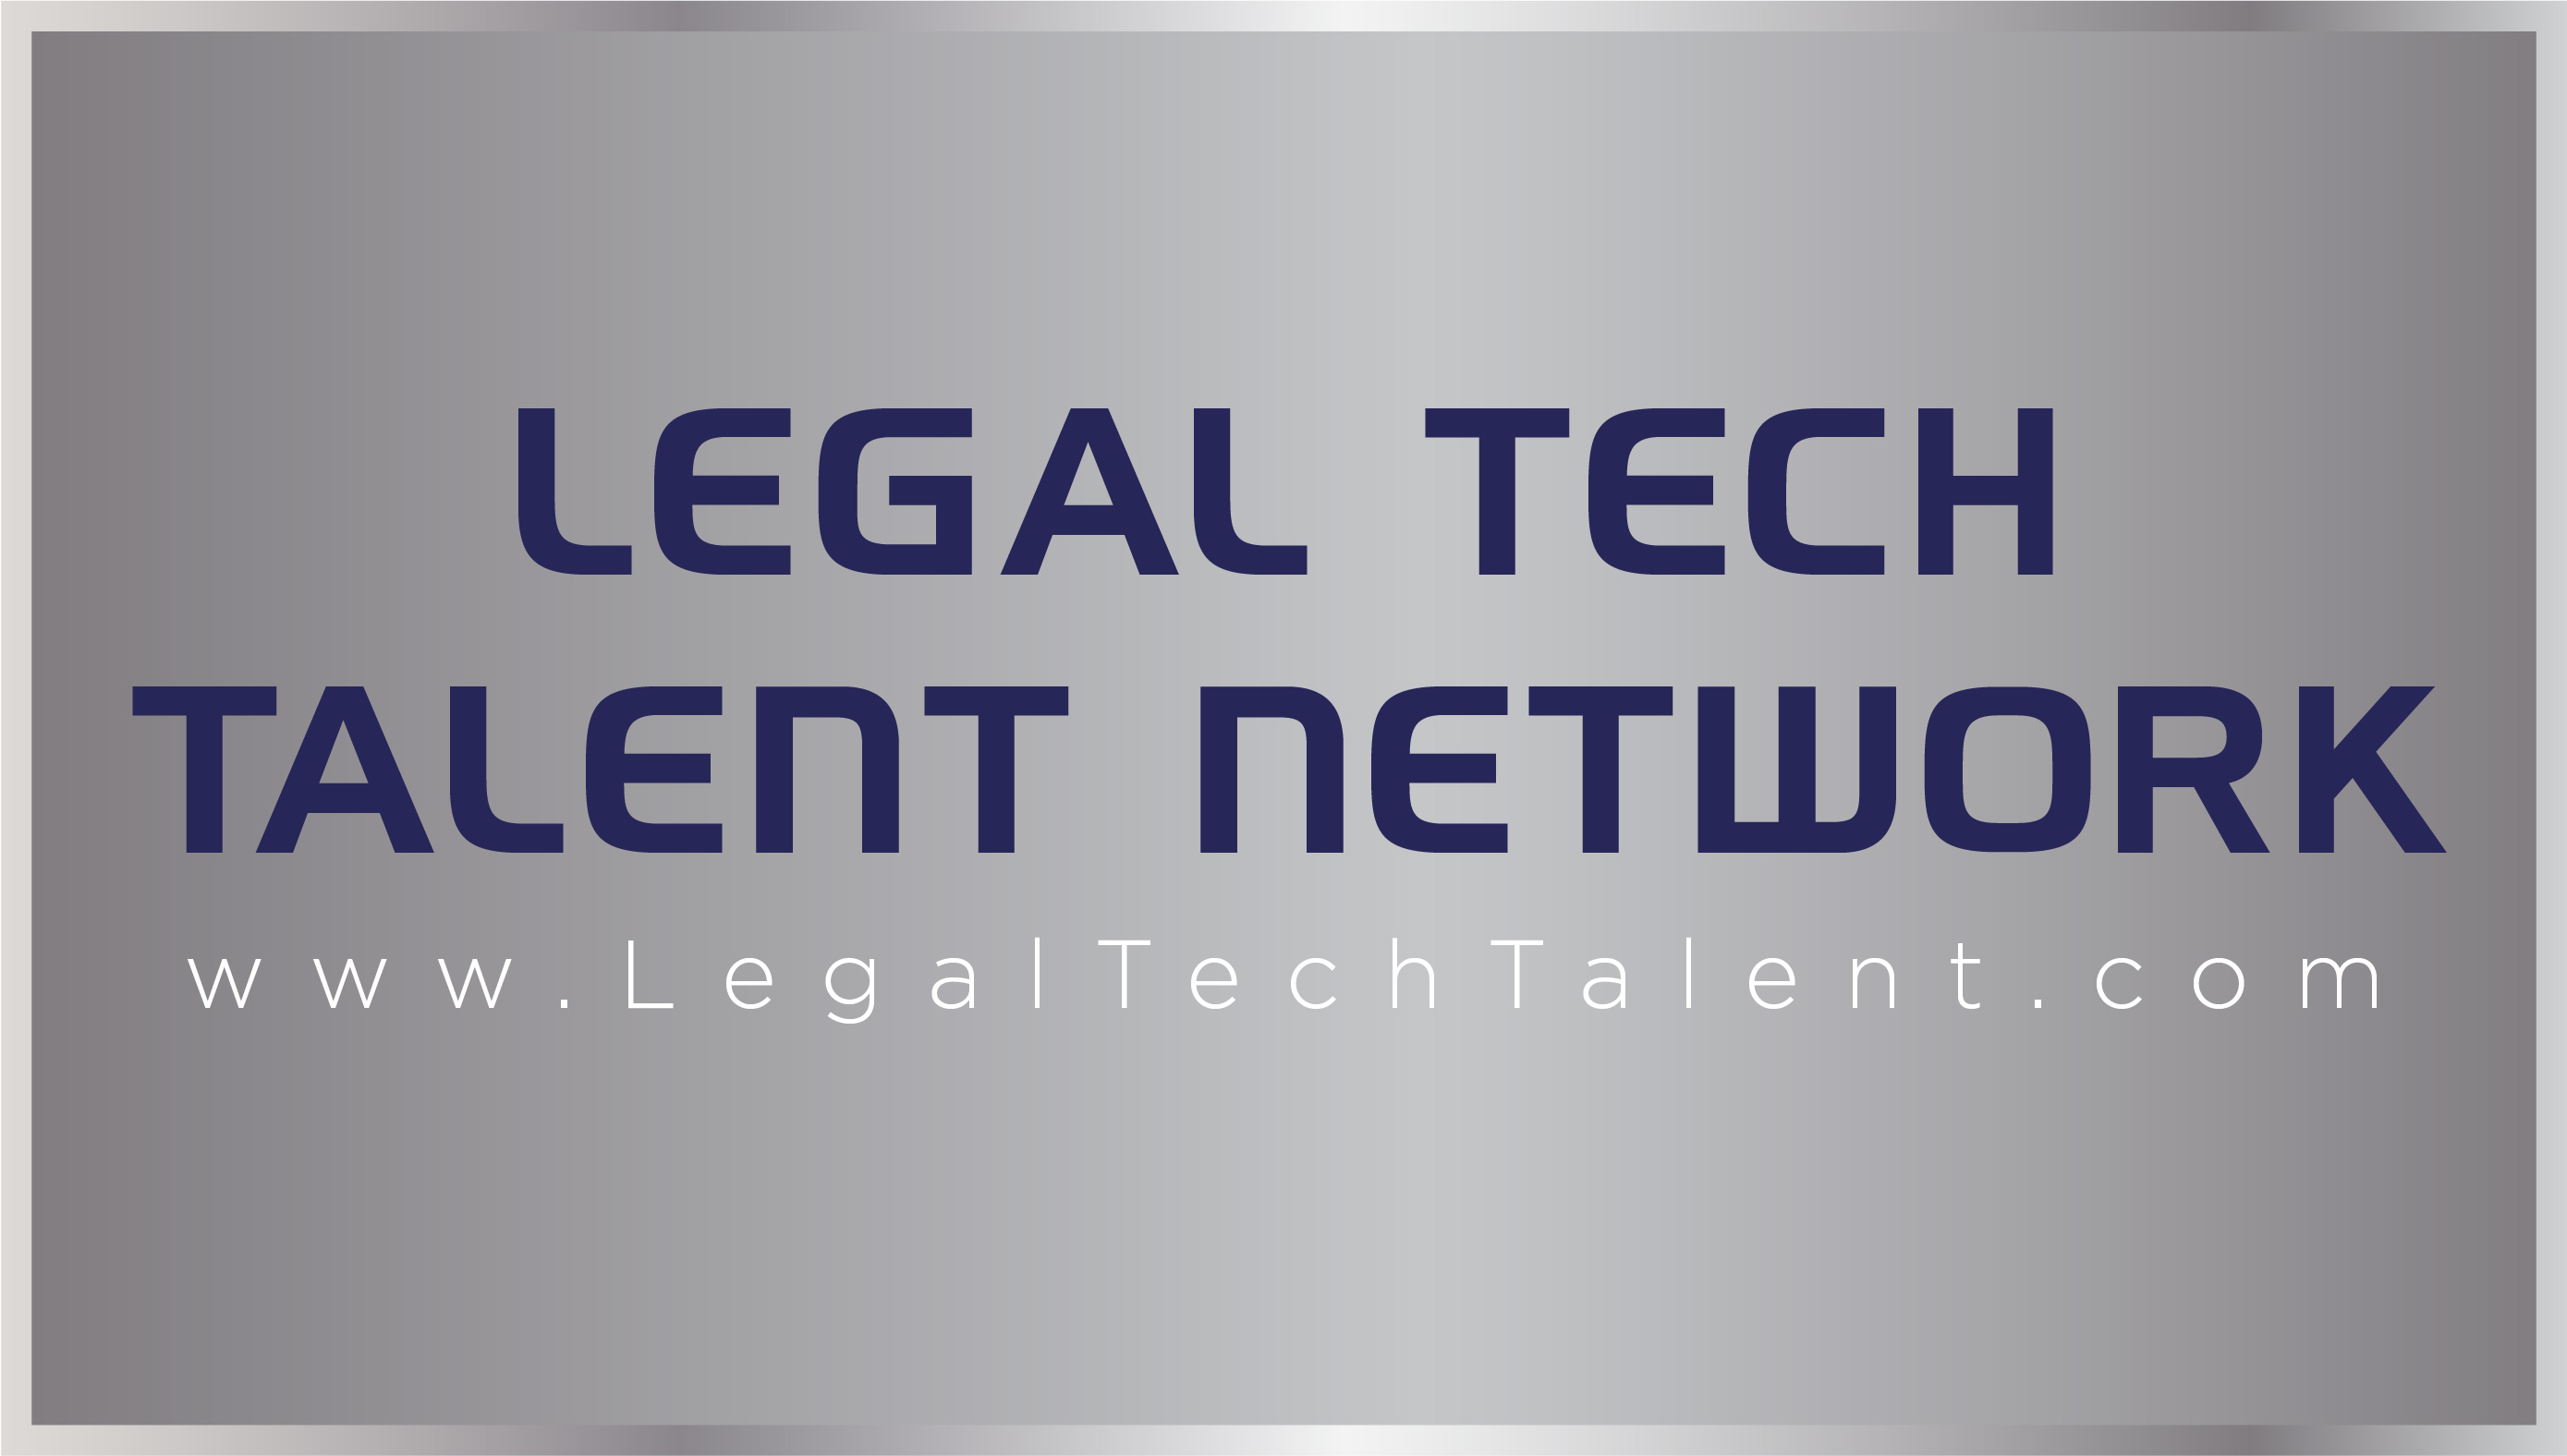 Legal Tech Talent Network